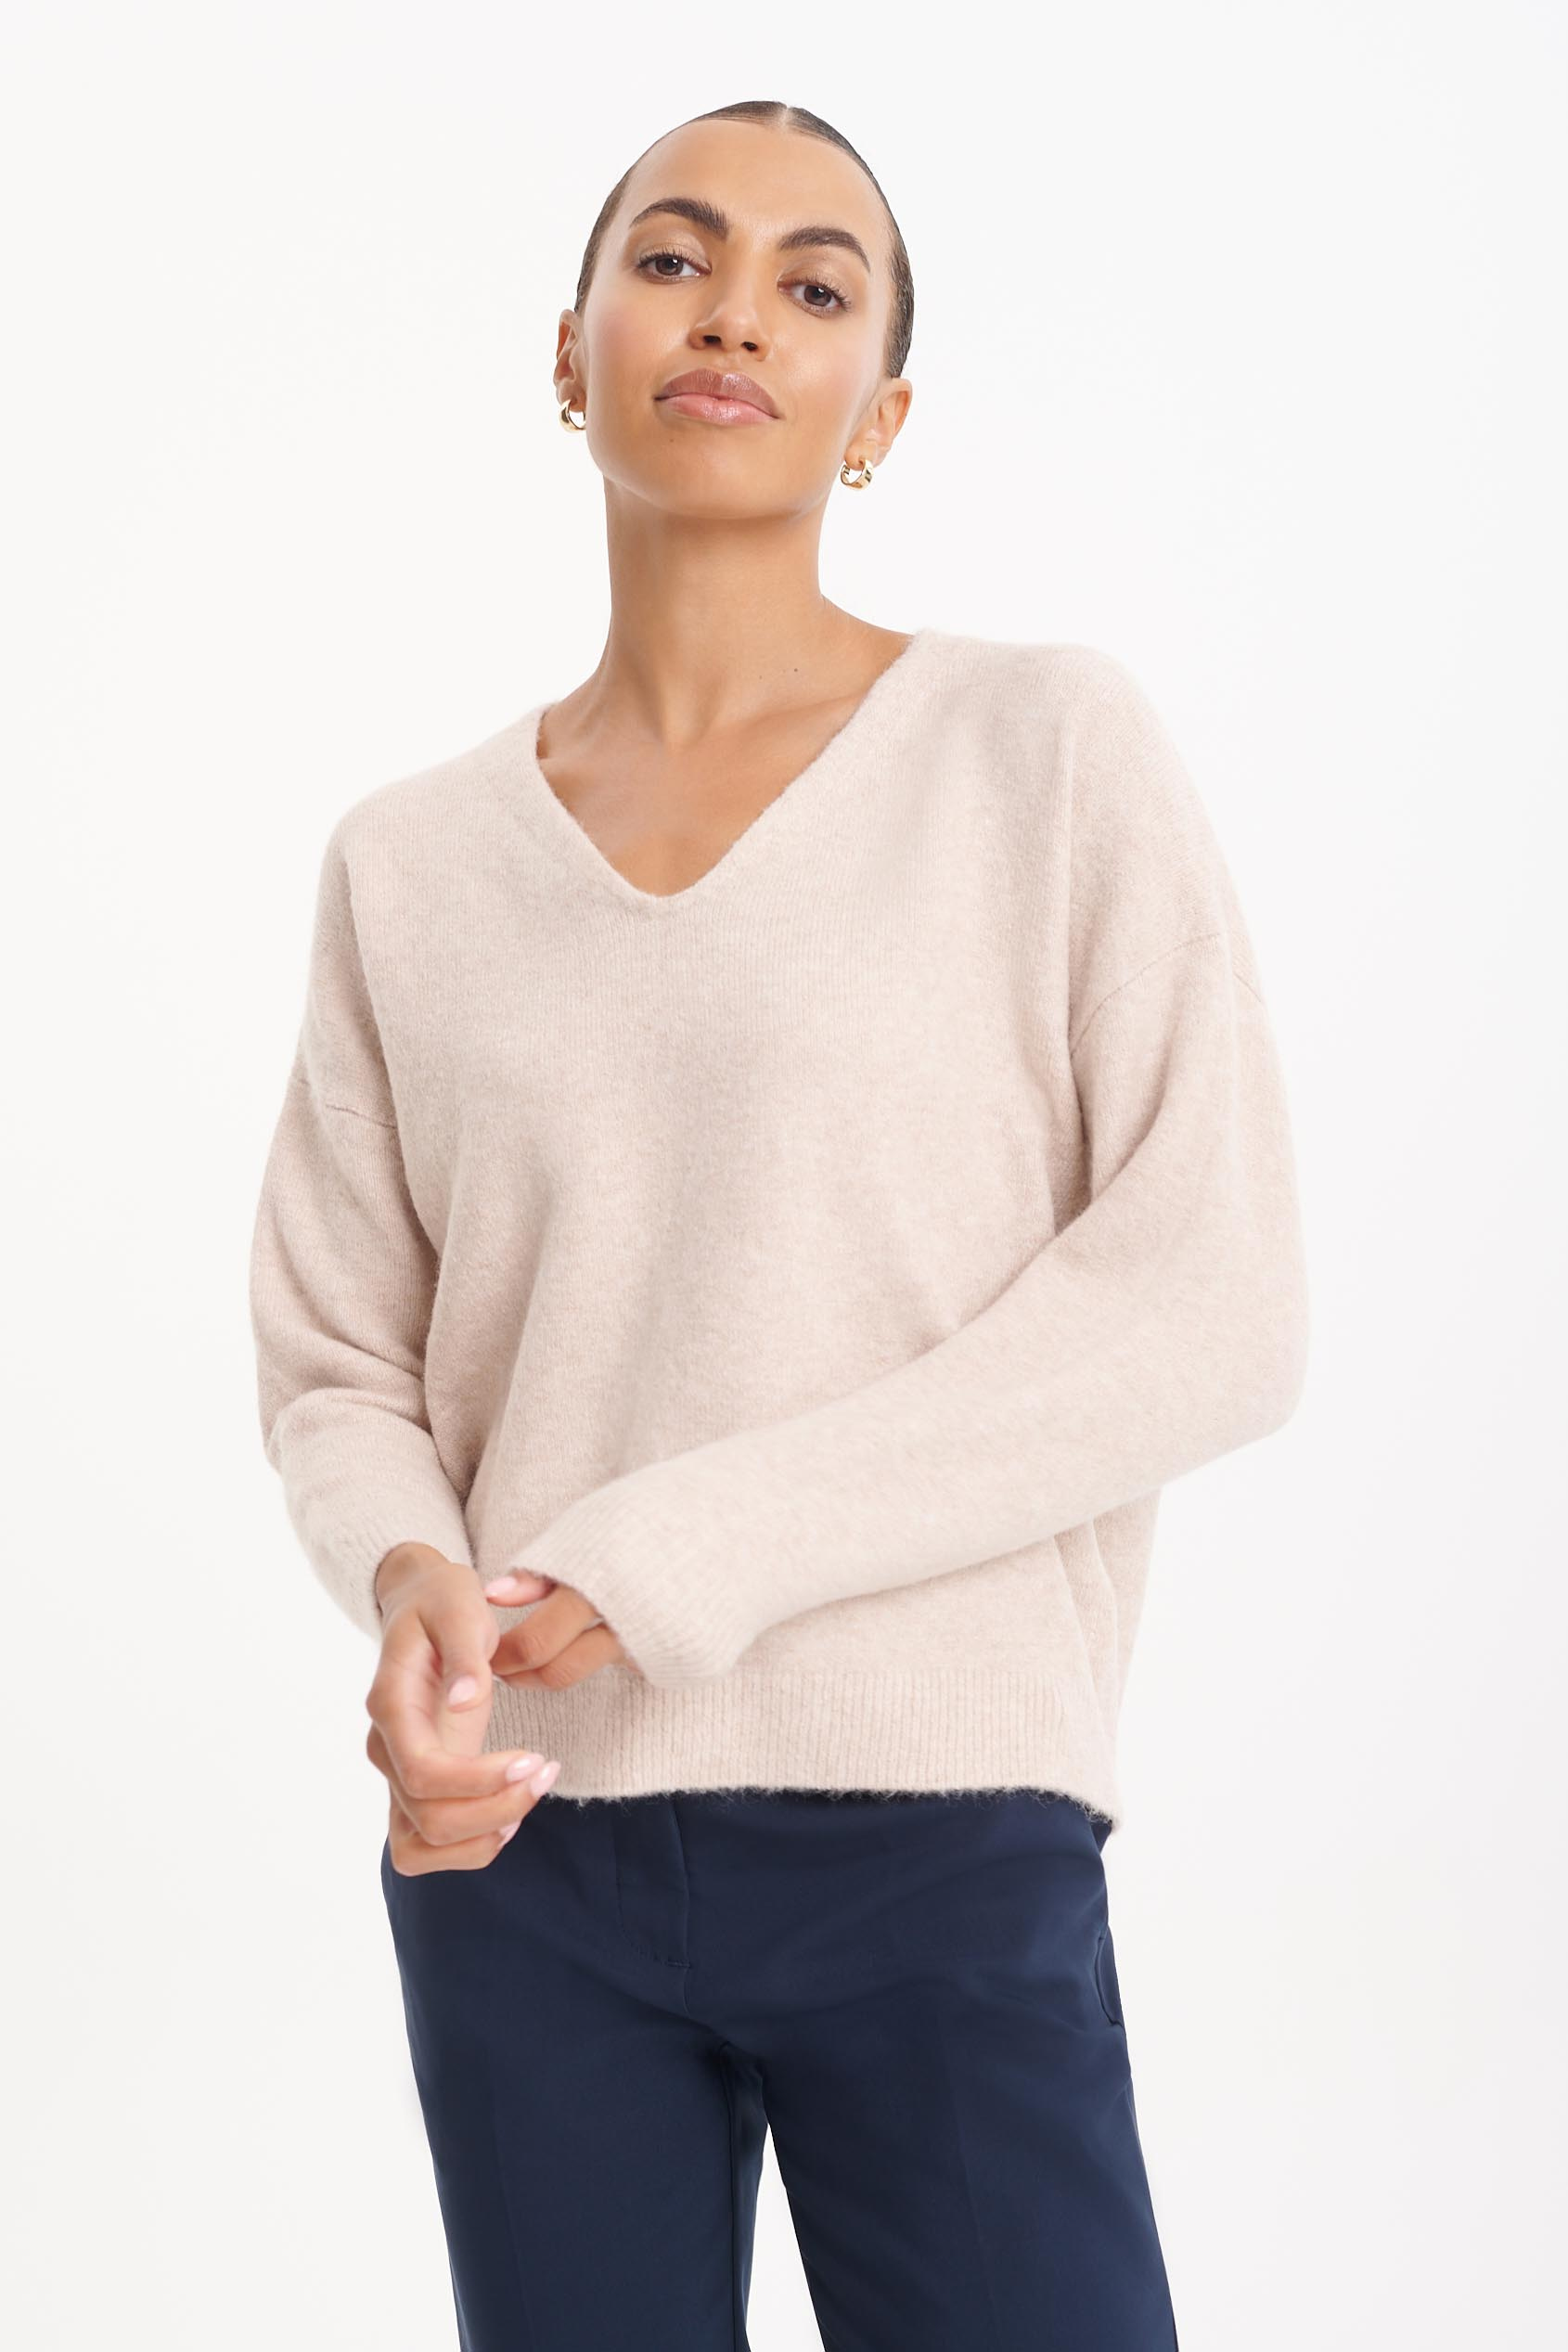 Luźny casualowy sweter w kolorze ecru